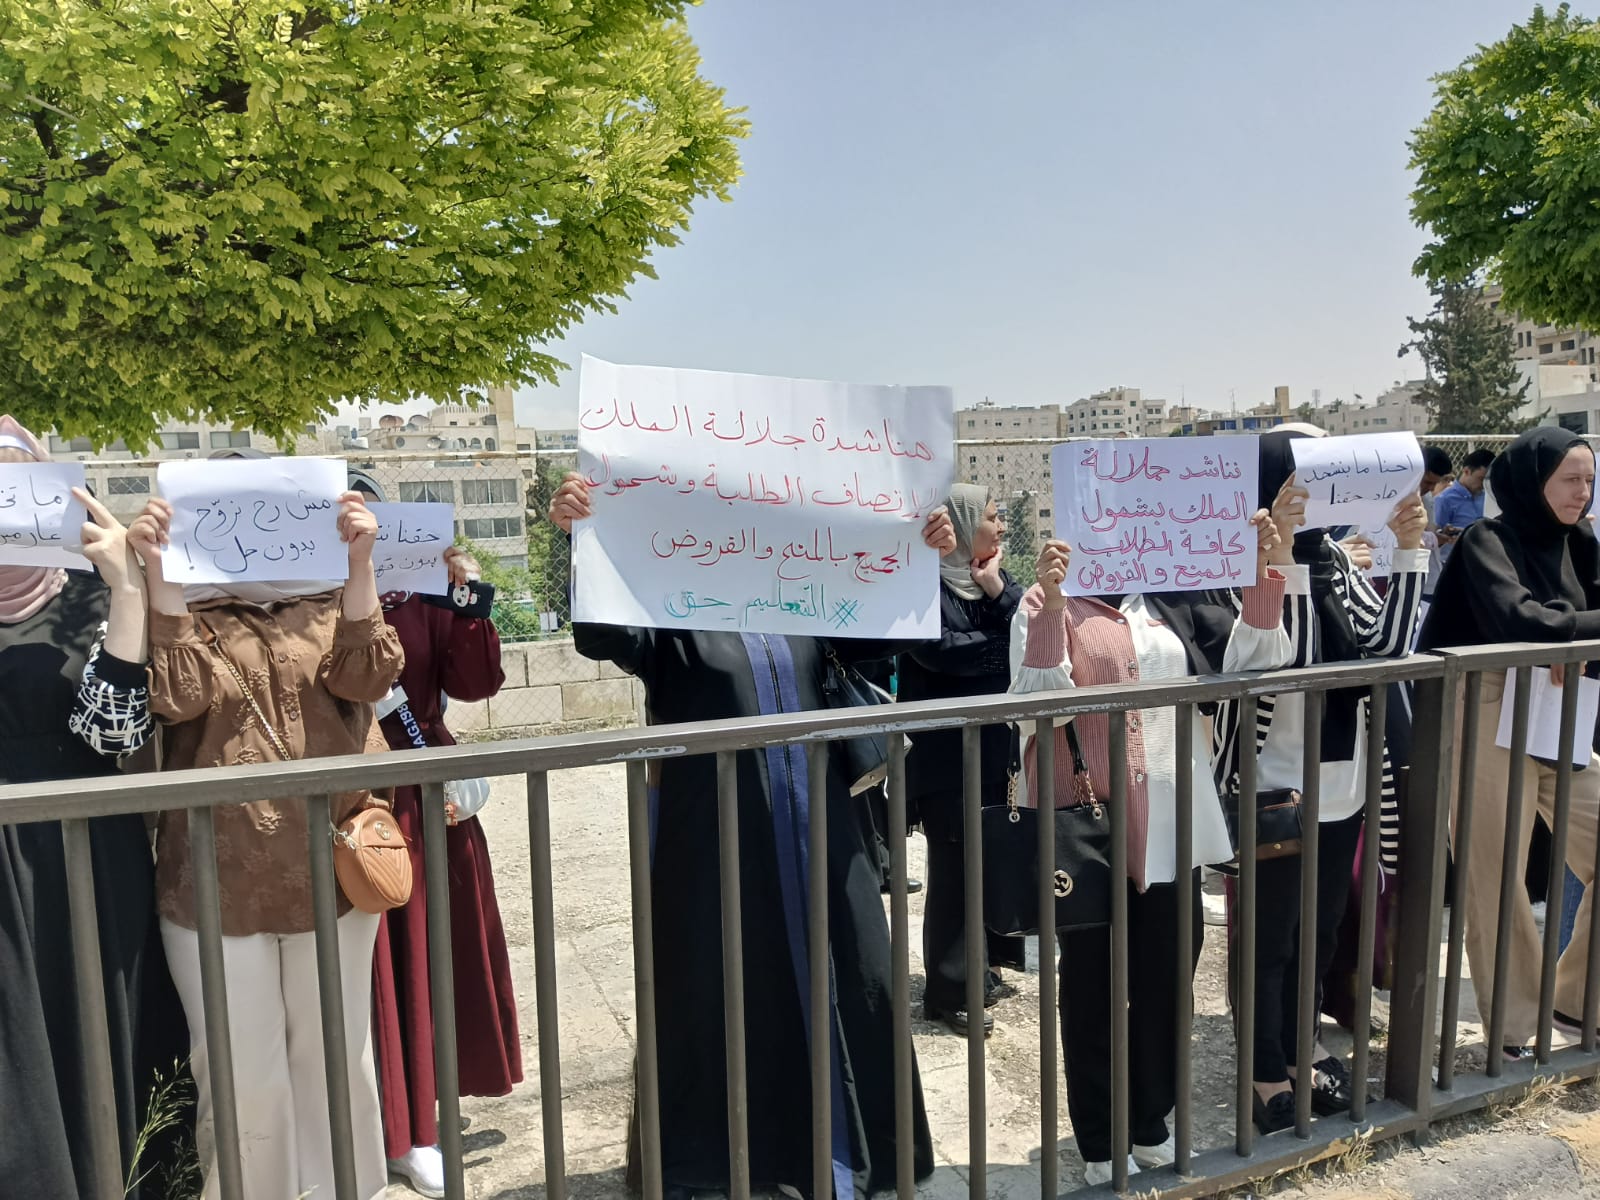 عاجل: طلبة جامعات يحتجون امام مجلس النواب للمطالبة بشمولهم بالمنح والقروض الجامعية  صور